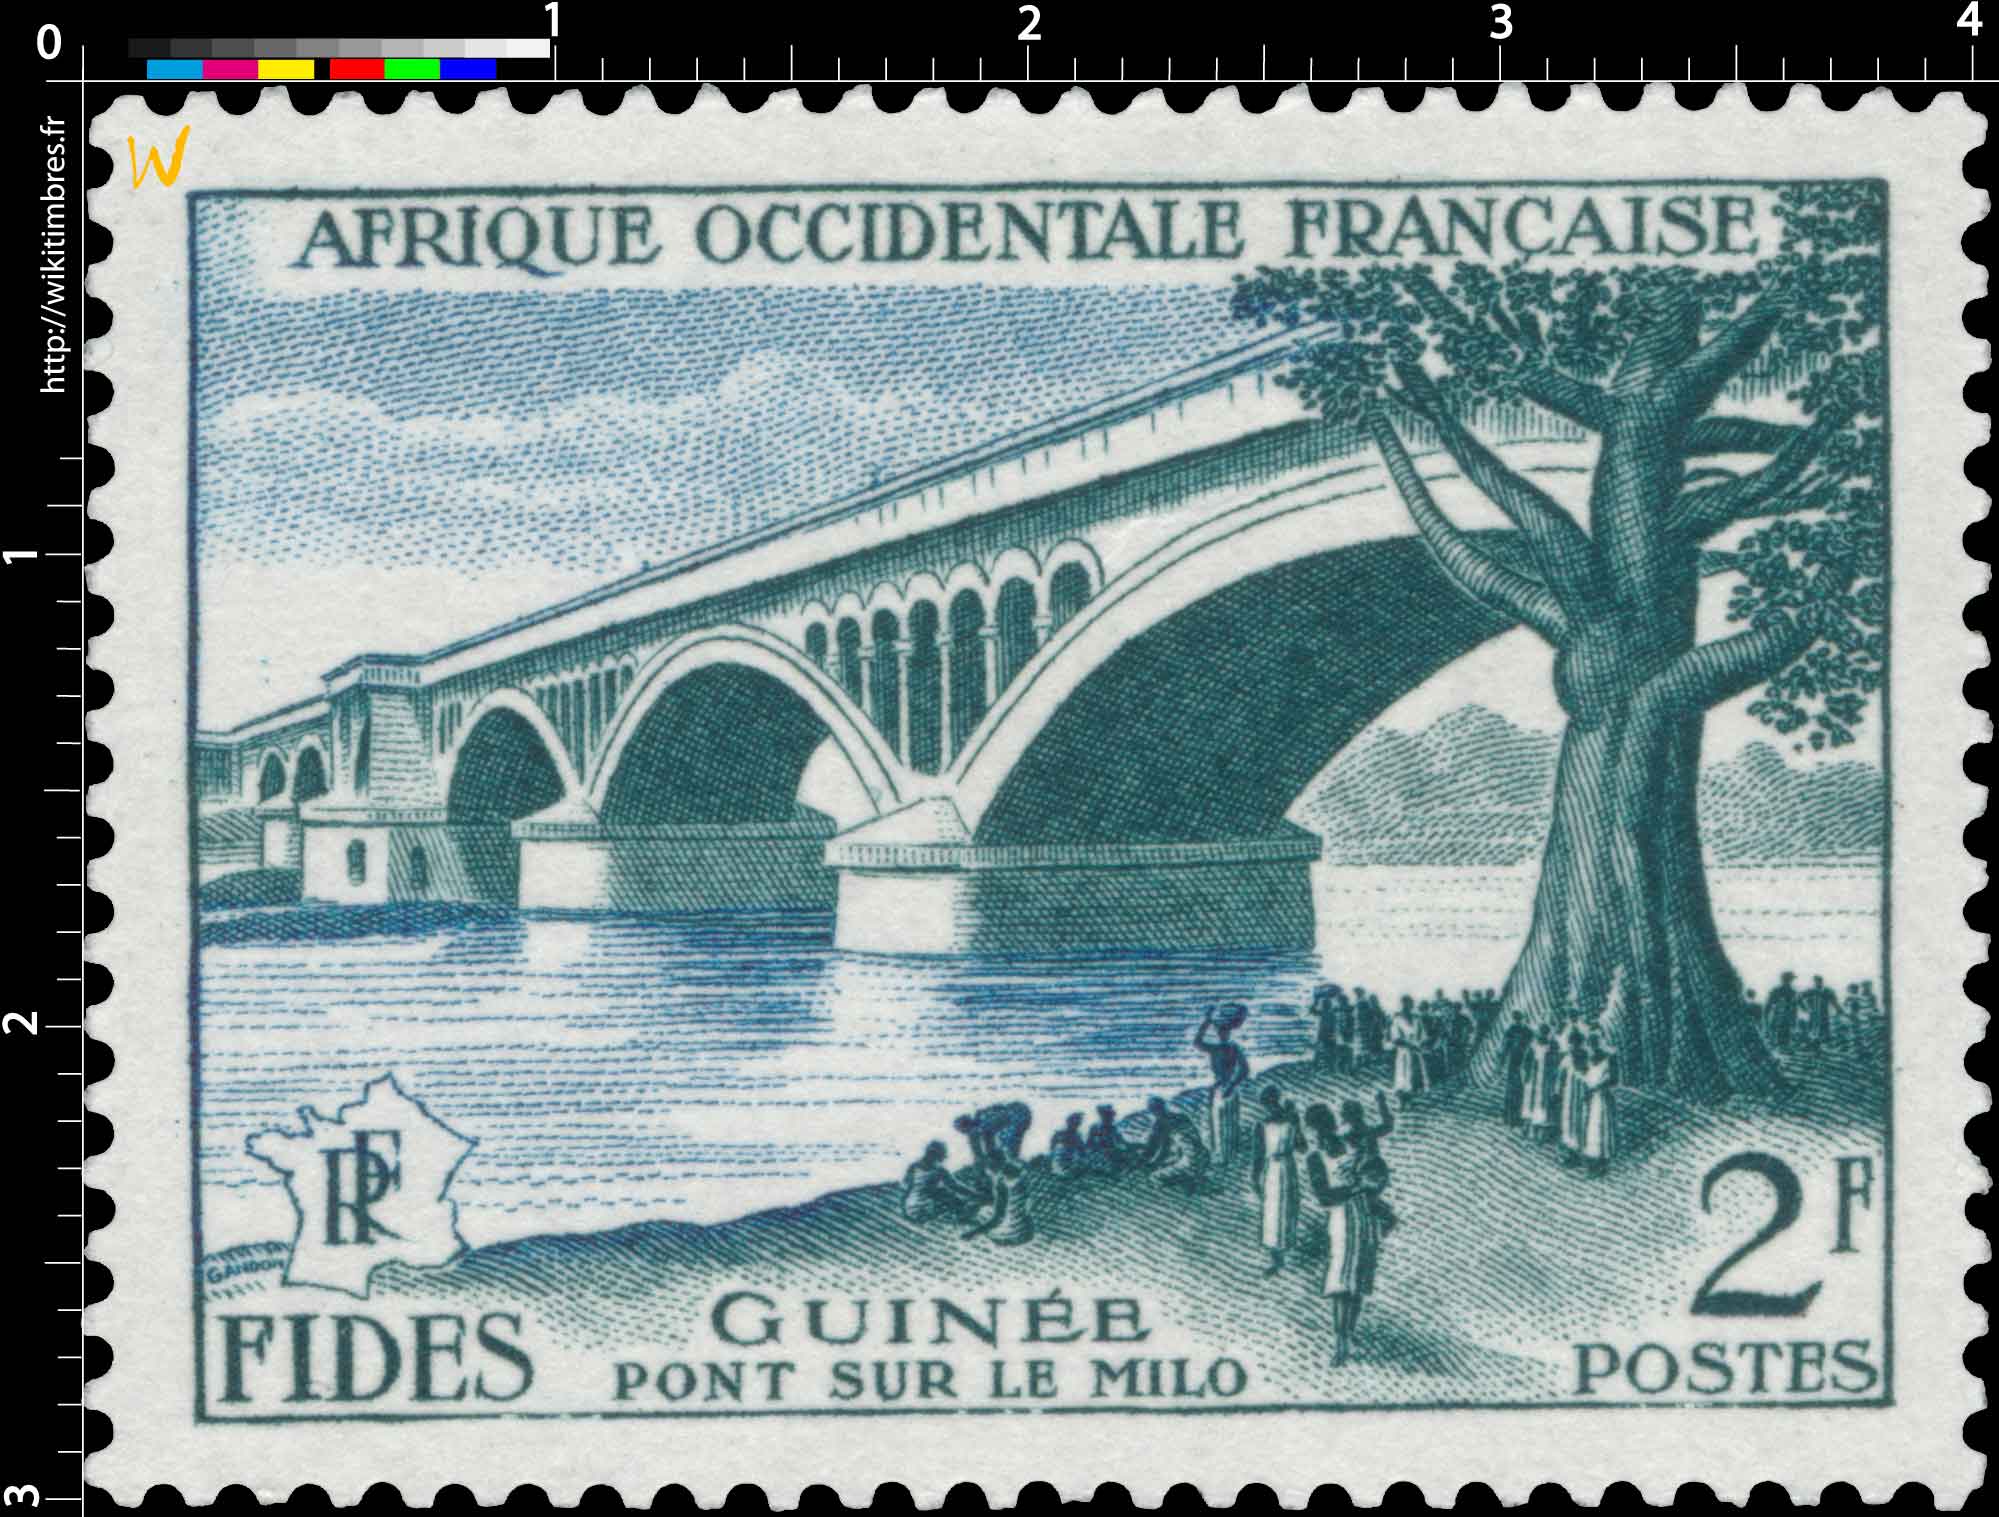 Afrique Occidentale Française - F.I.D.E.S. - Pont sur le Milo Guinée